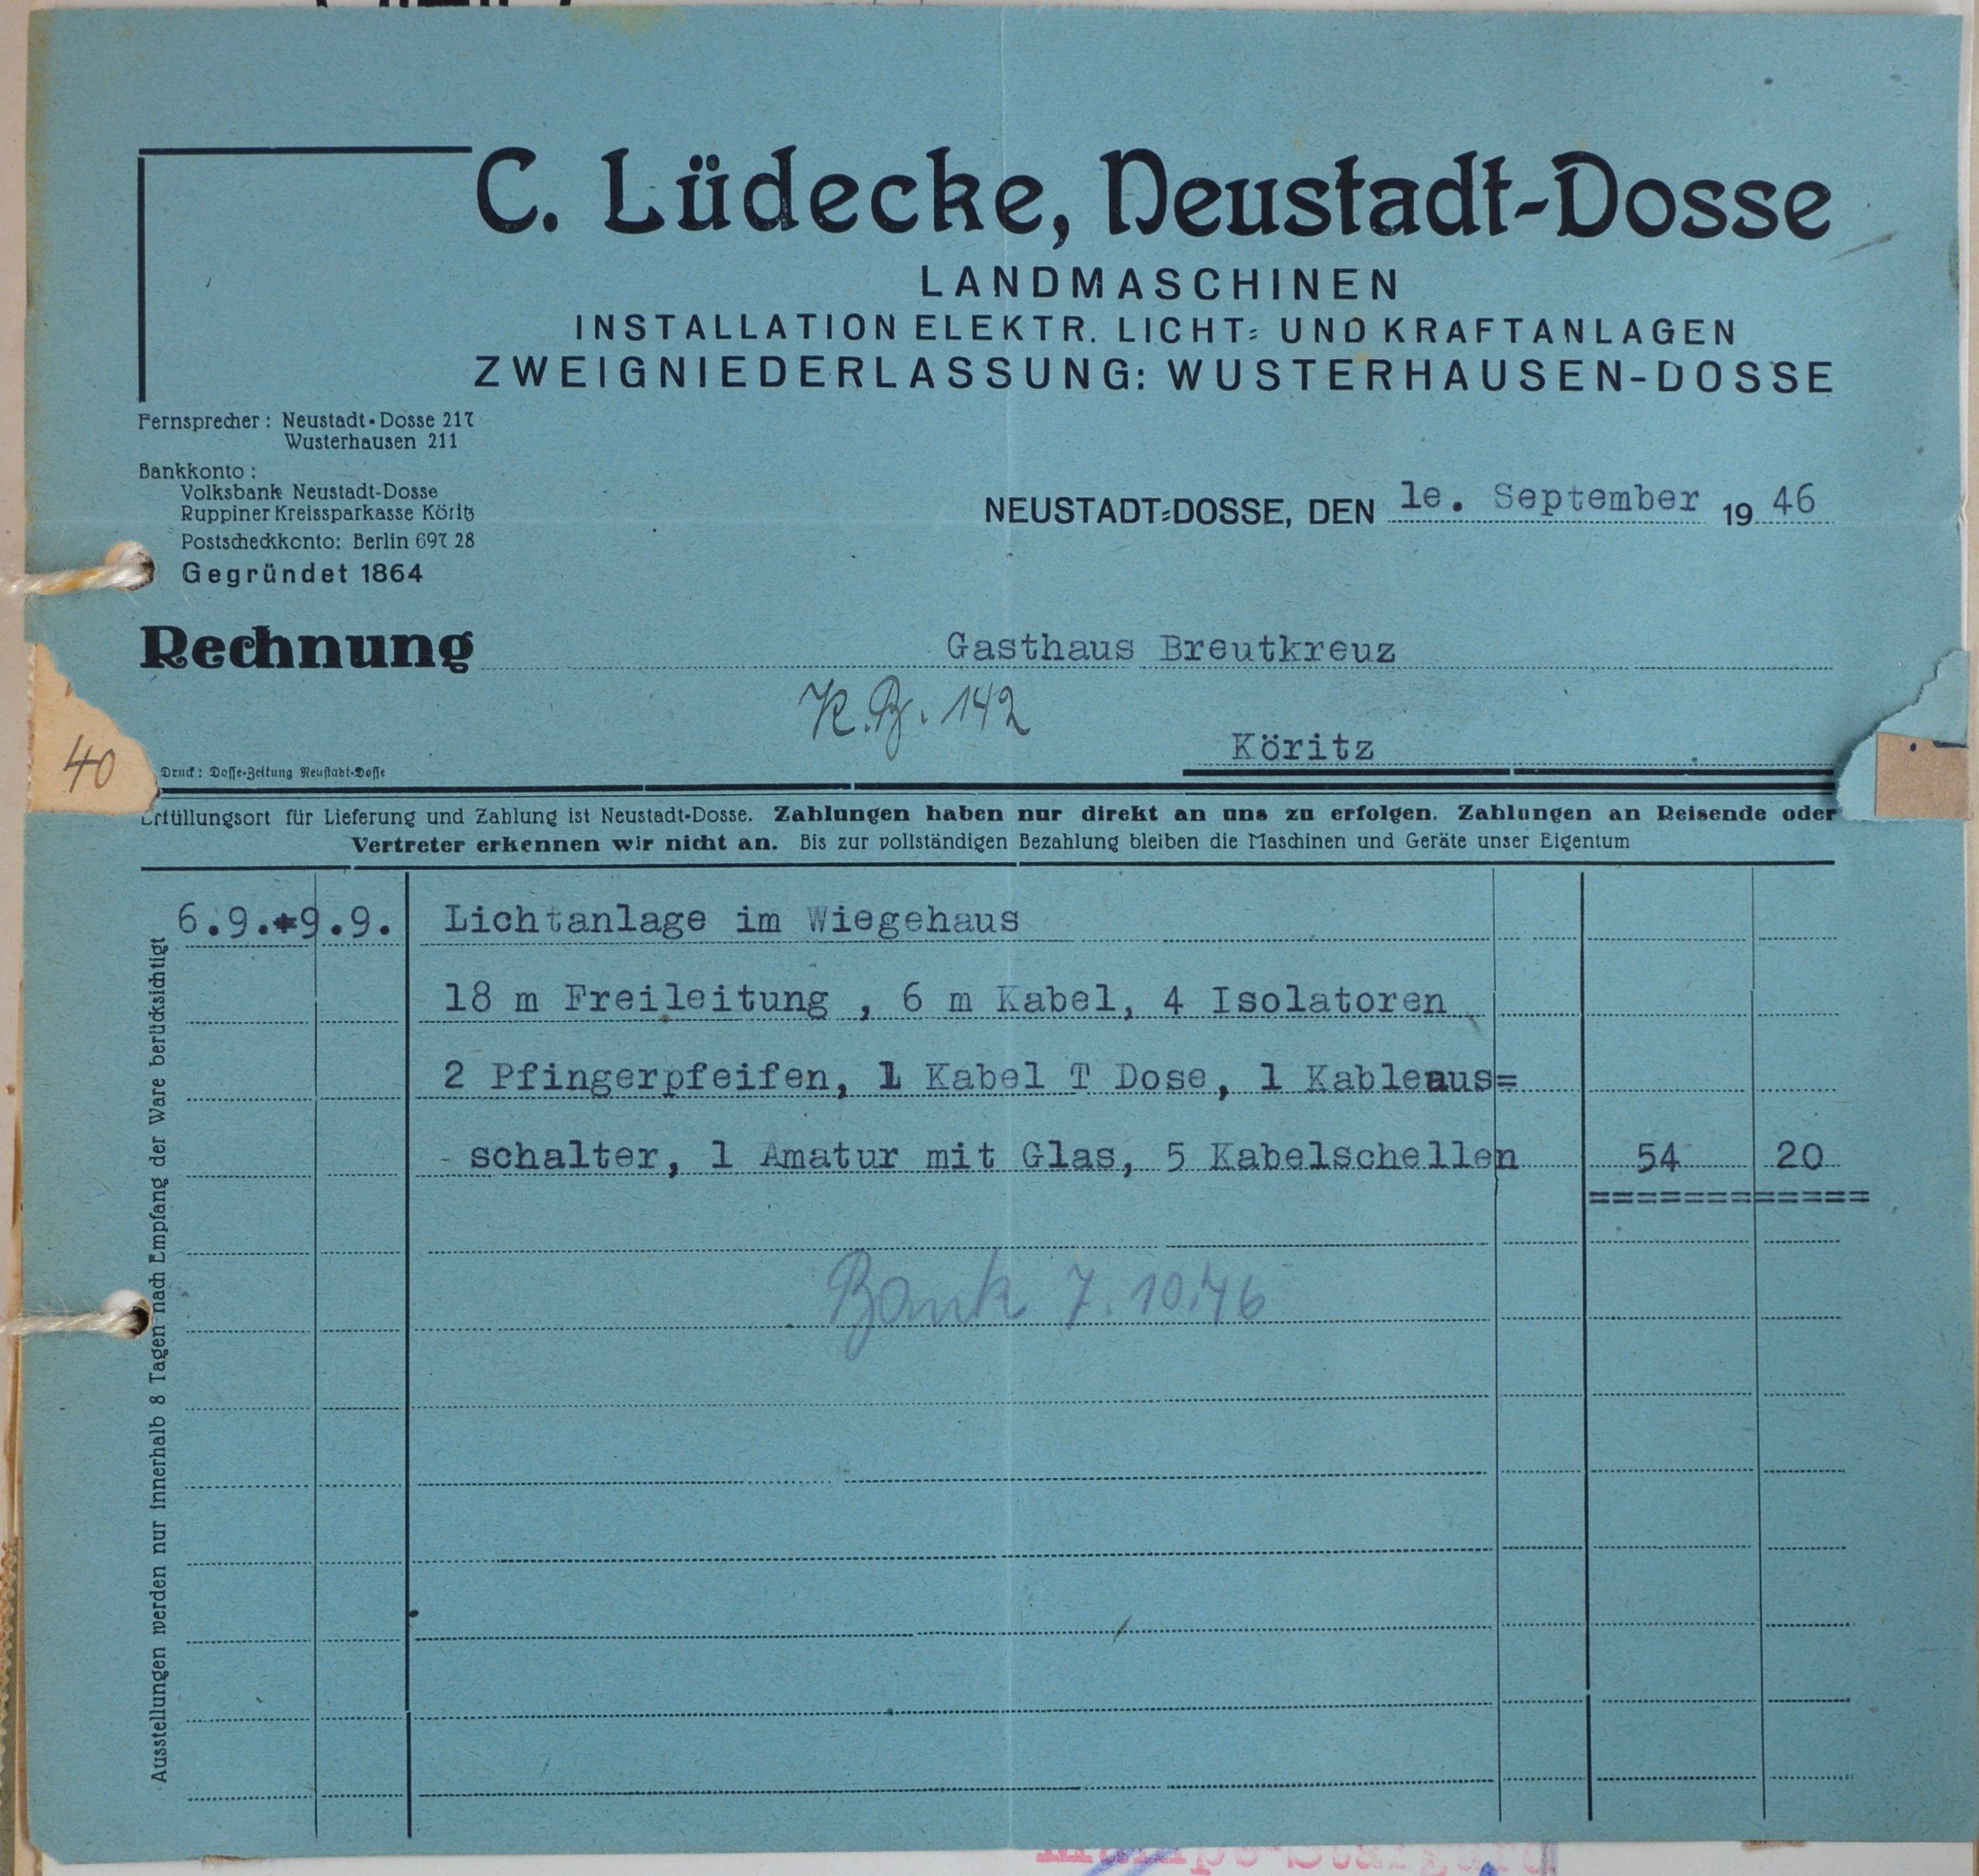 Rechnung von dem Elektriker C. Lüdecke aus Neustadt (Dosse) für Wilhelm Breitkreuz (DDR Geschichtsmuseum im Dokumentationszentrum Perleberg CC BY-SA)